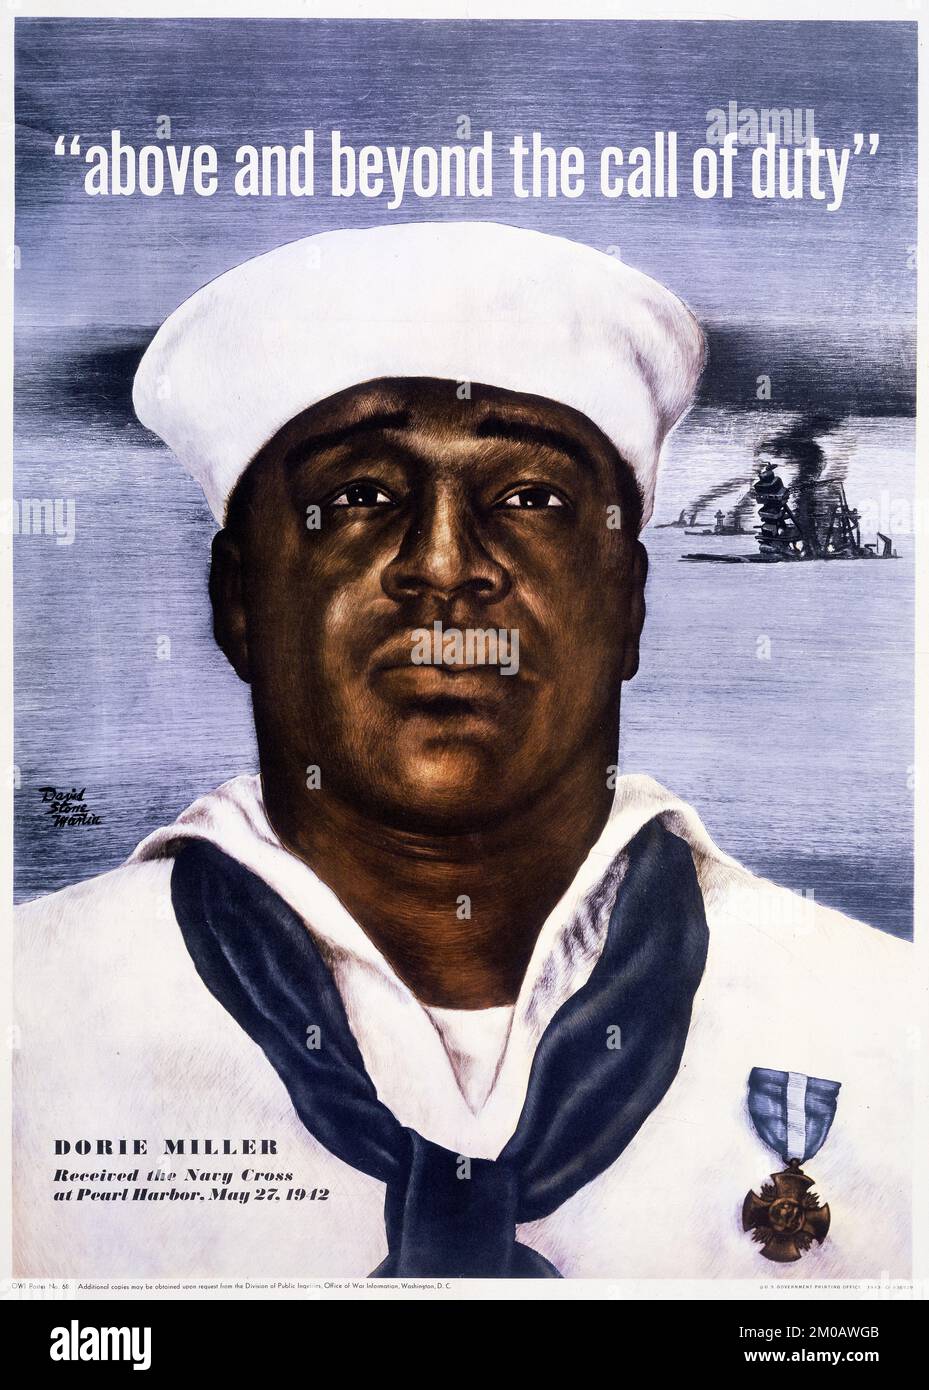 Al di sopra e al di là della chiamata di dovere - Dorie Miller ha ricevuto la Croce della Marina a Pearl Harbor, 27 maggio 1942. Illustrazione di David Stone Martin Foto Stock